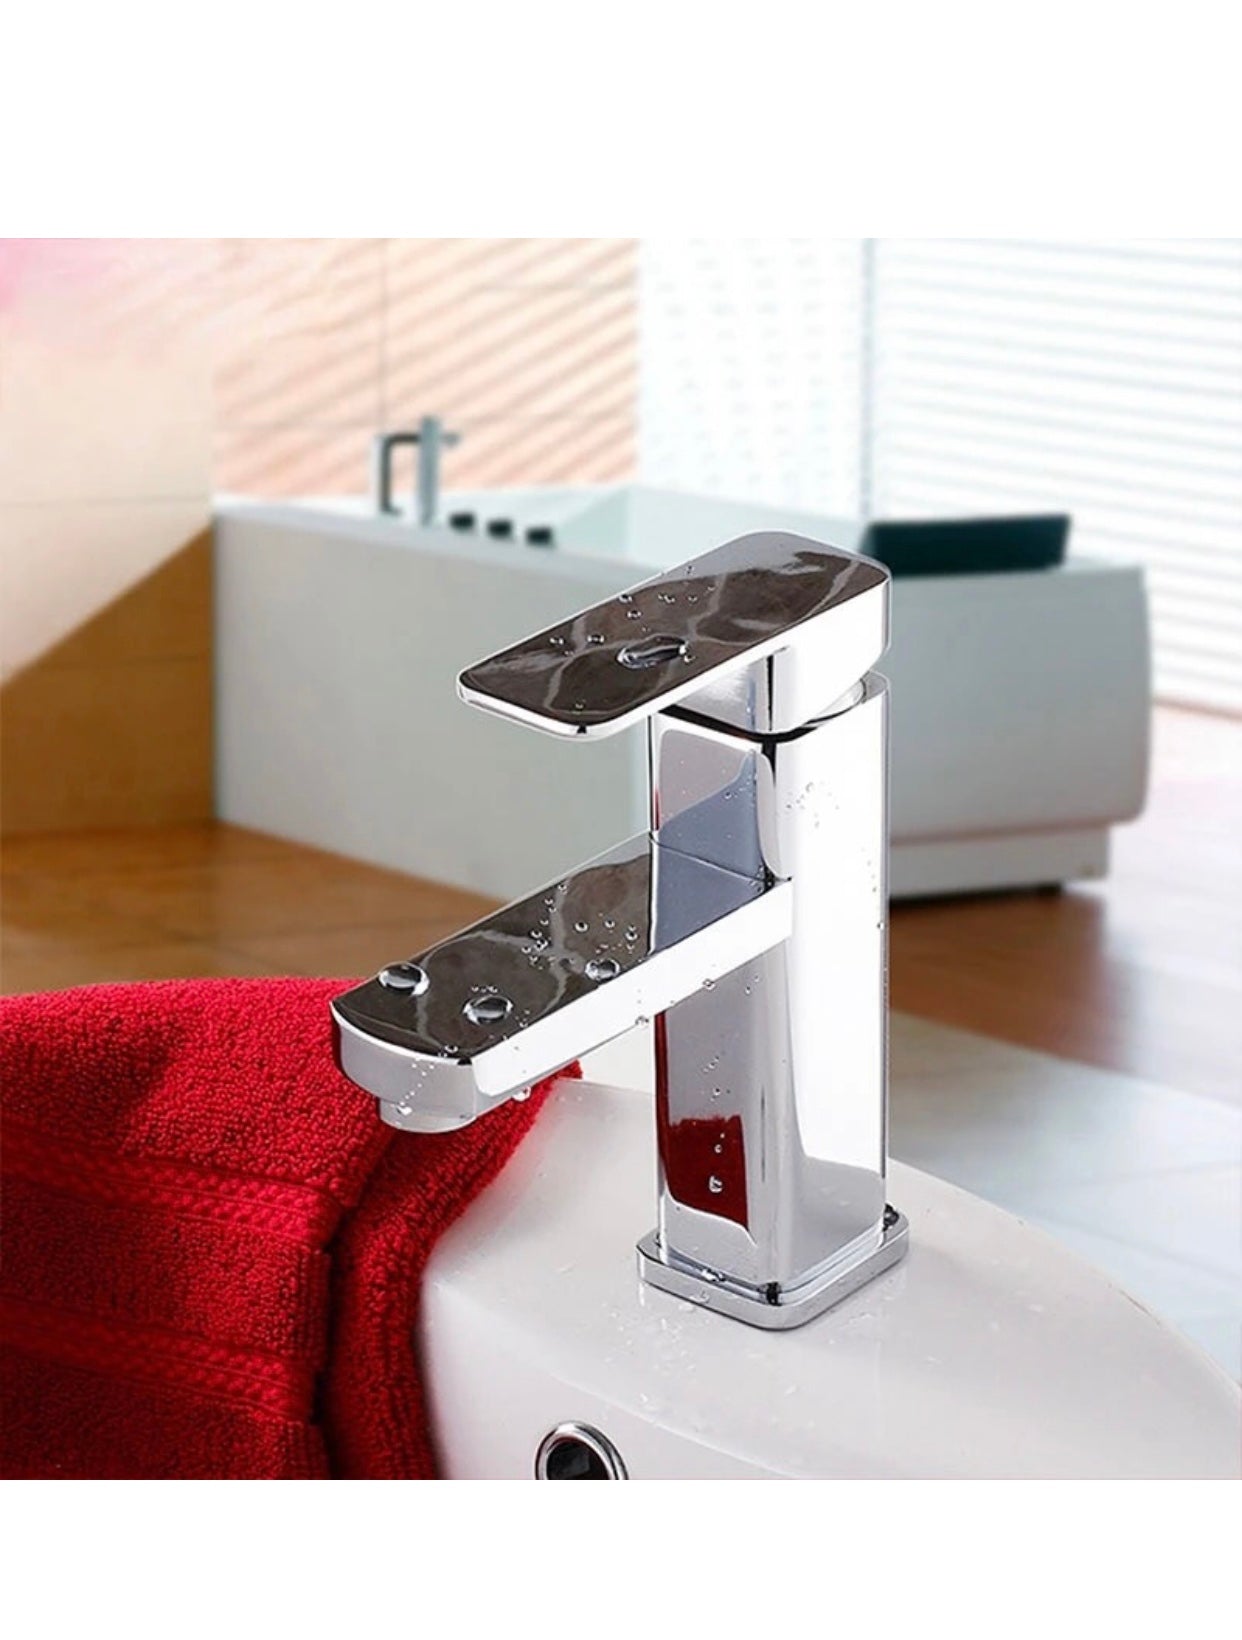 A|M Aquae Tormili Brass Taps Basin Mixer Single Handle Water Mixer Bathroom Faucet Set